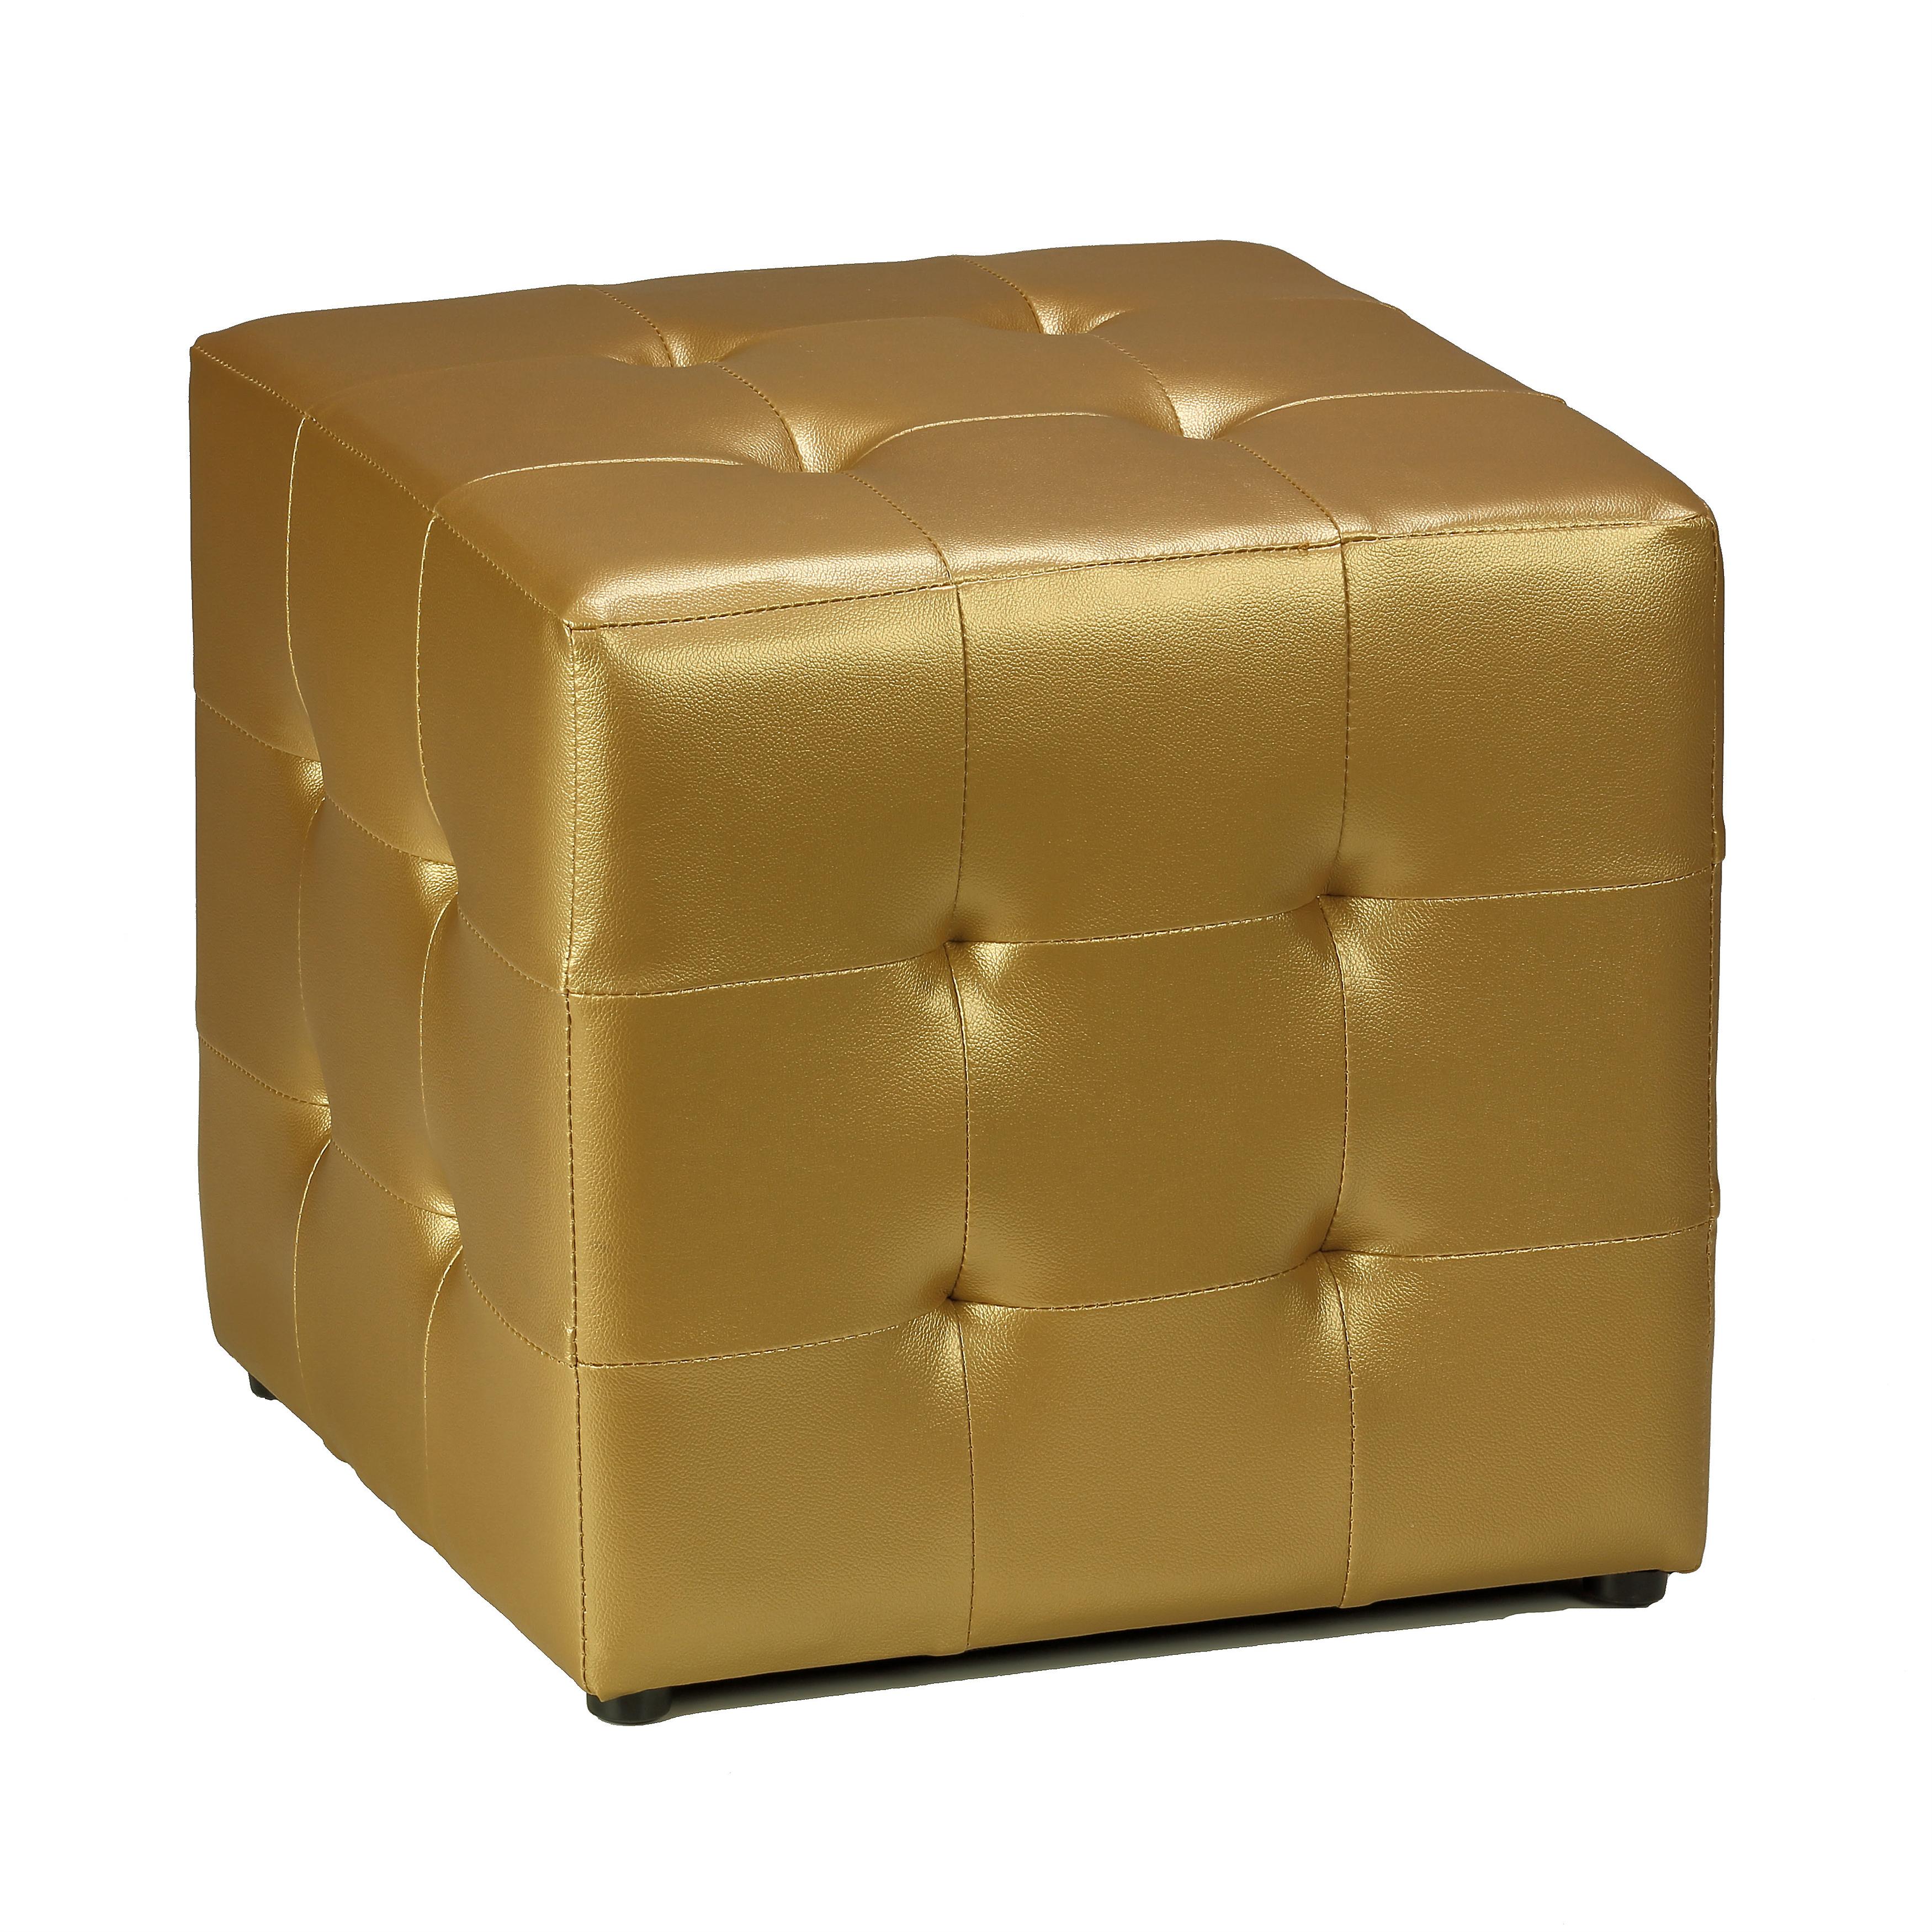 Porch & Den Lawndale Gold Vinyl Tufted Cube Ottoman